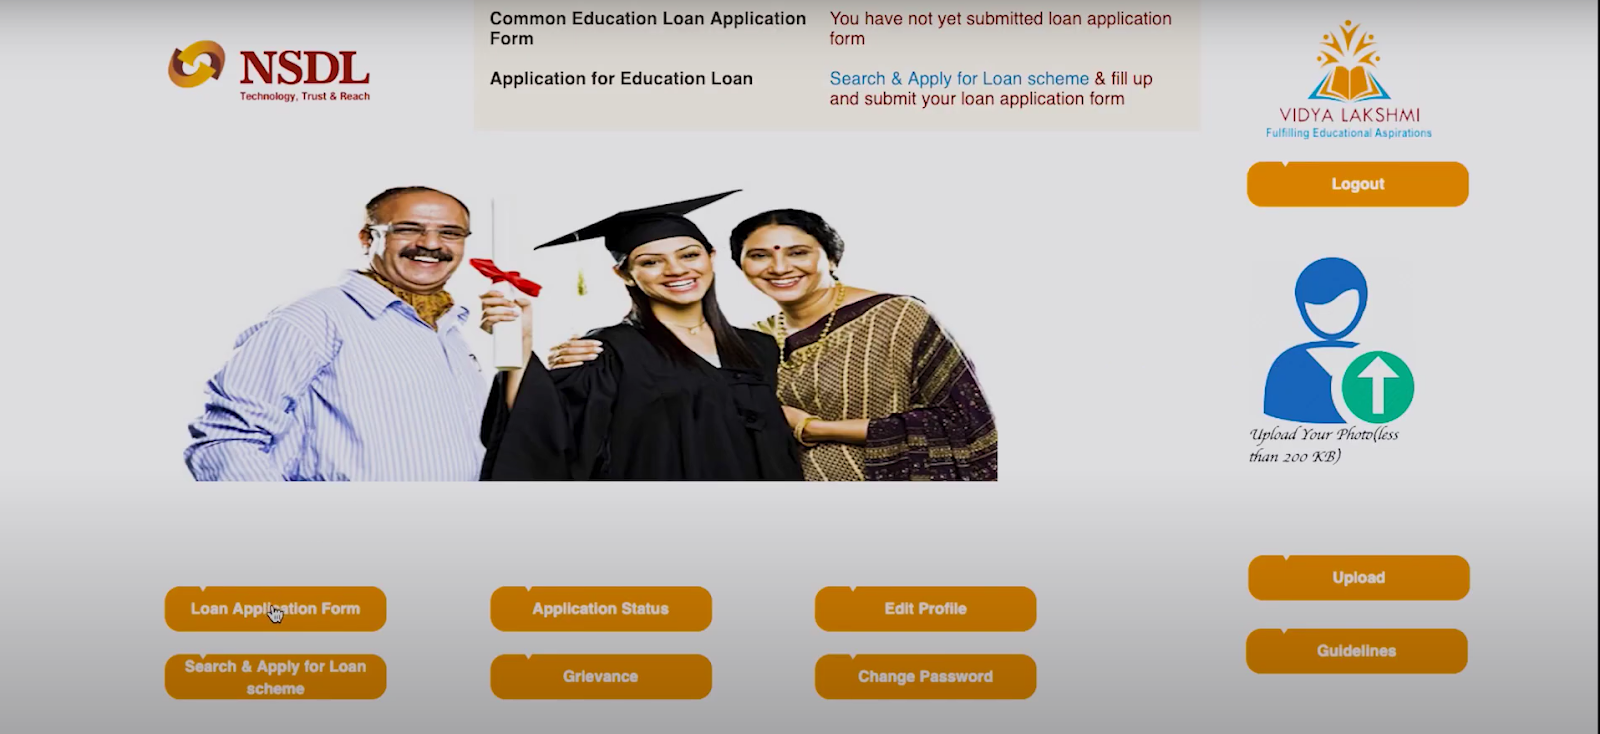 Vidya Lakshmi Portal - how to make an application